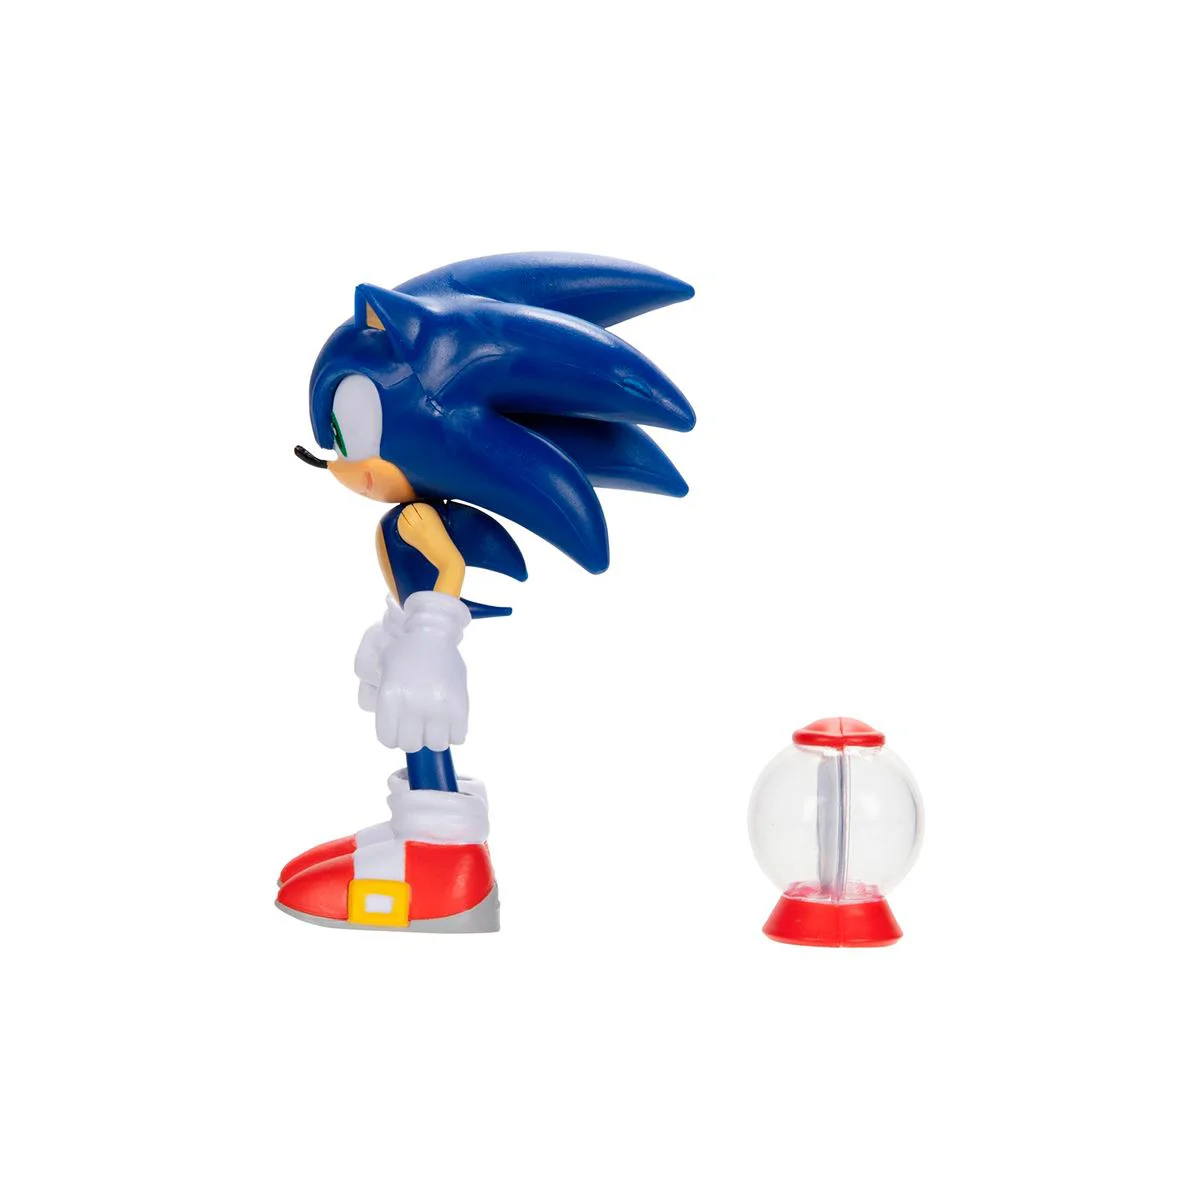 Игровая фигурка Sonic the Hedgehog Соник, 10 см (с артикуляцией)